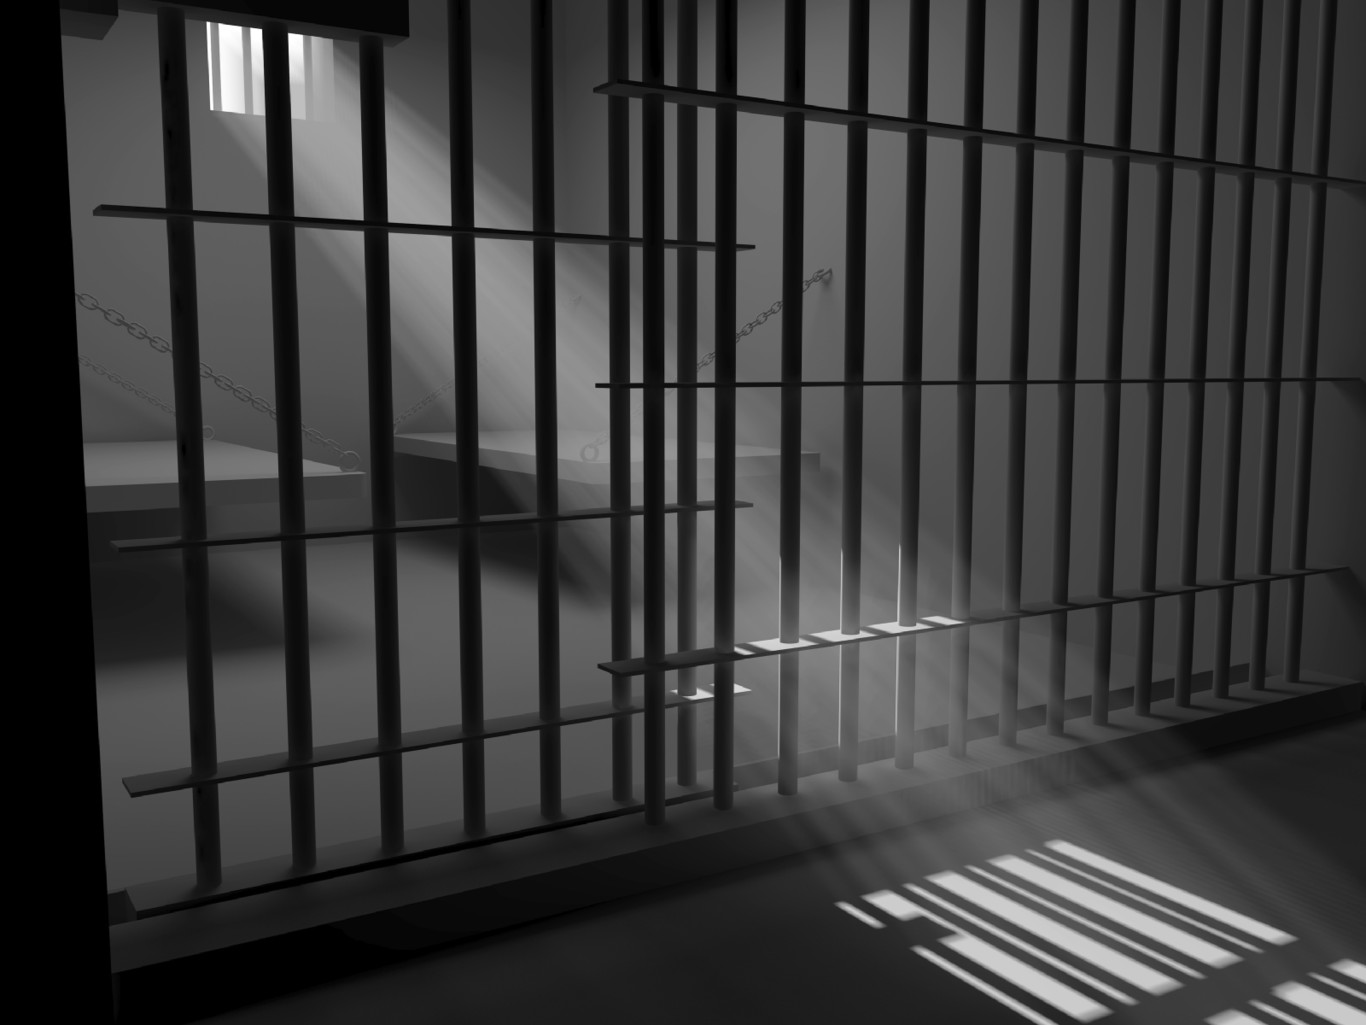 La prisionalización de un delincuente de 18 años puede generar un eculturamiento carcelario que contradice a los fines de la pena